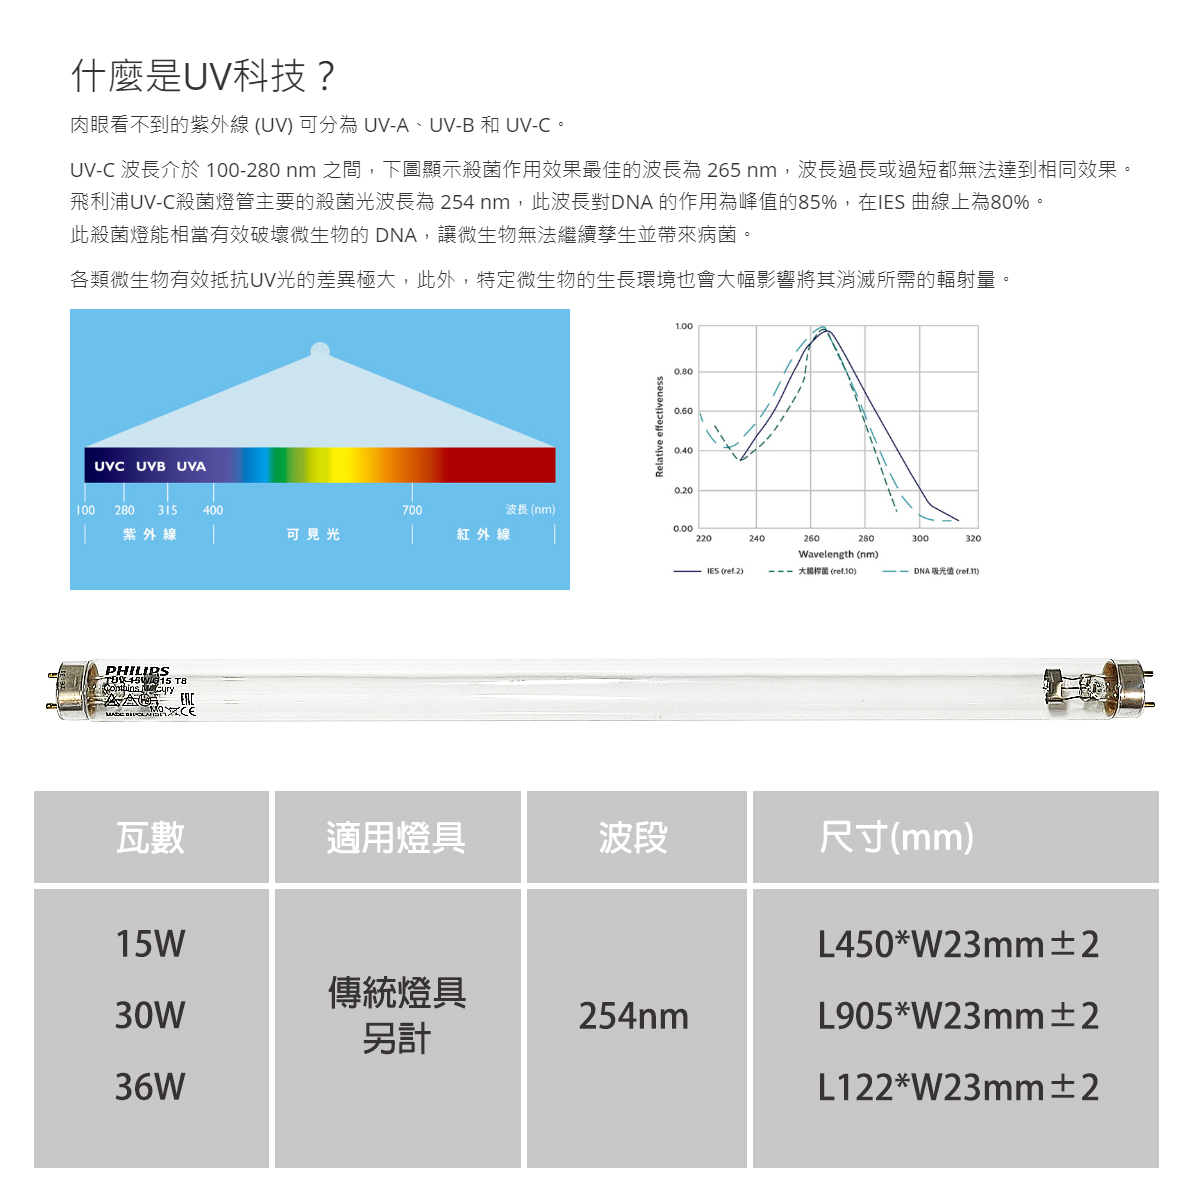 【飛利浦】UVC紫外線殺菌燈管 T8 15W 30W 36W 需搭配傳統燈座使用